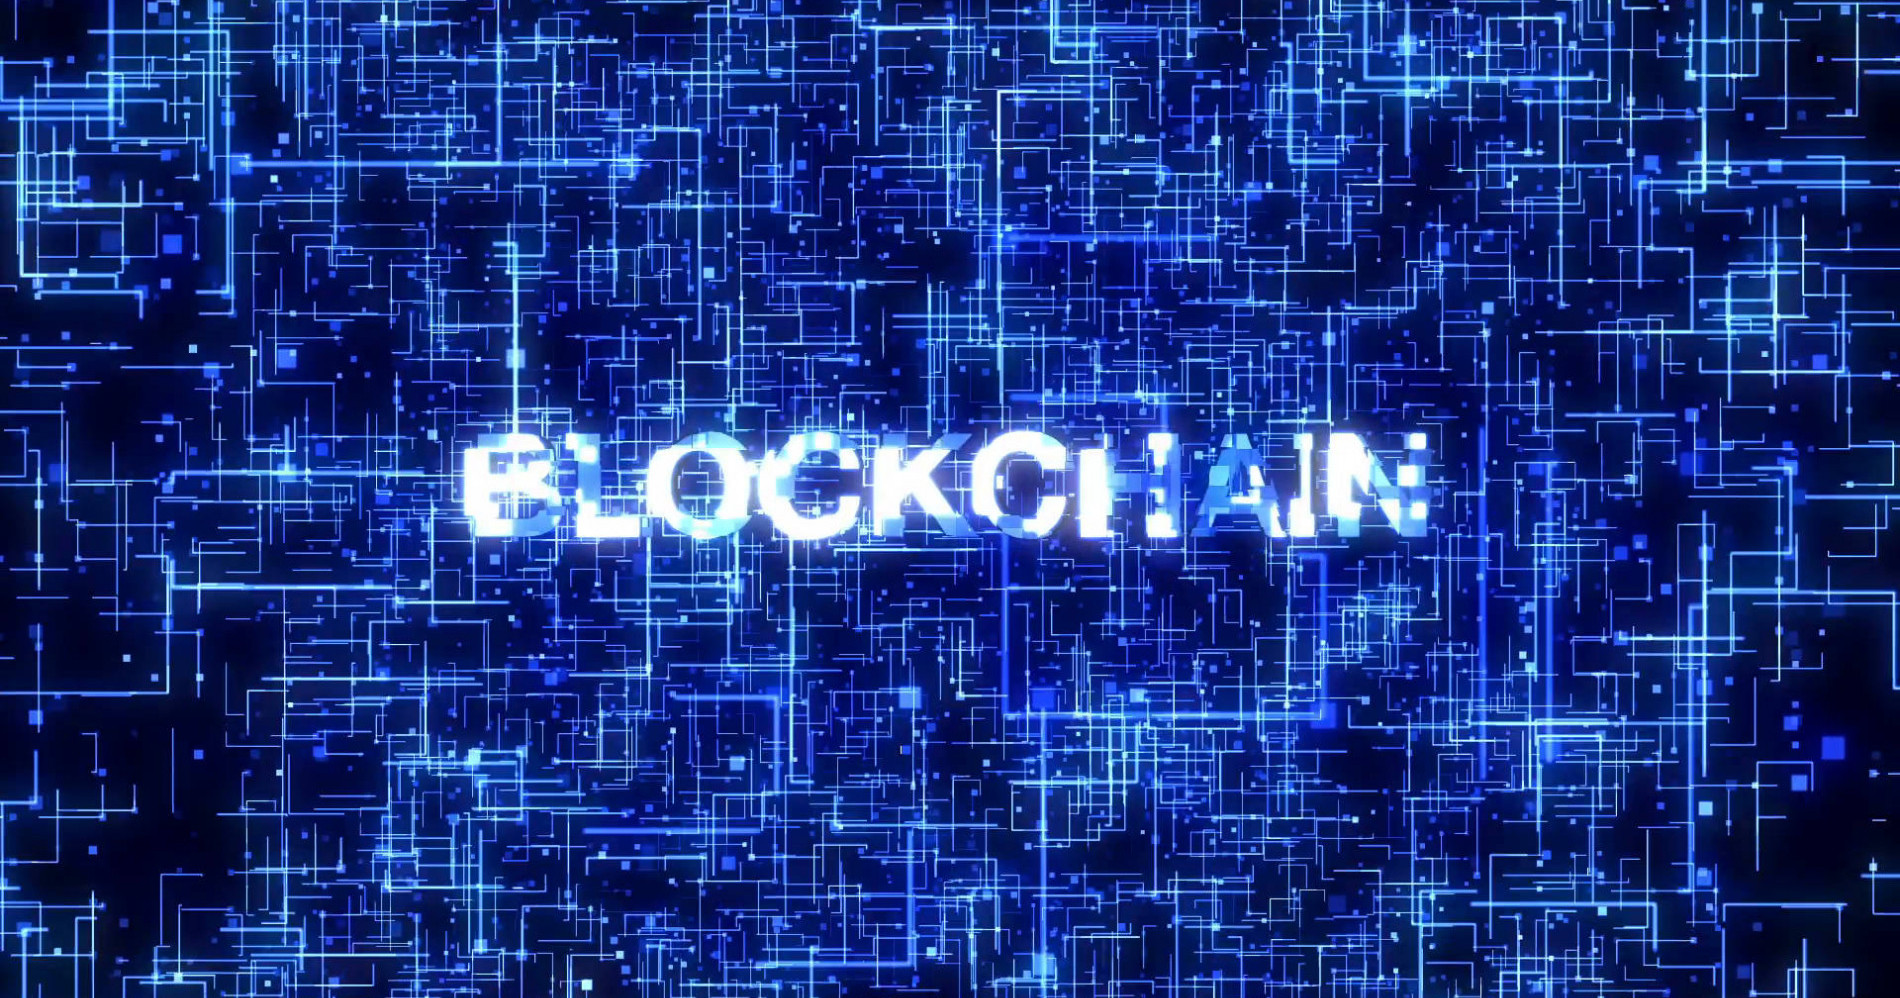 Blockchain memudahkan transaksi keuangan dengan sistem desentralisasinya (Sumber Gambar: Pinterest)